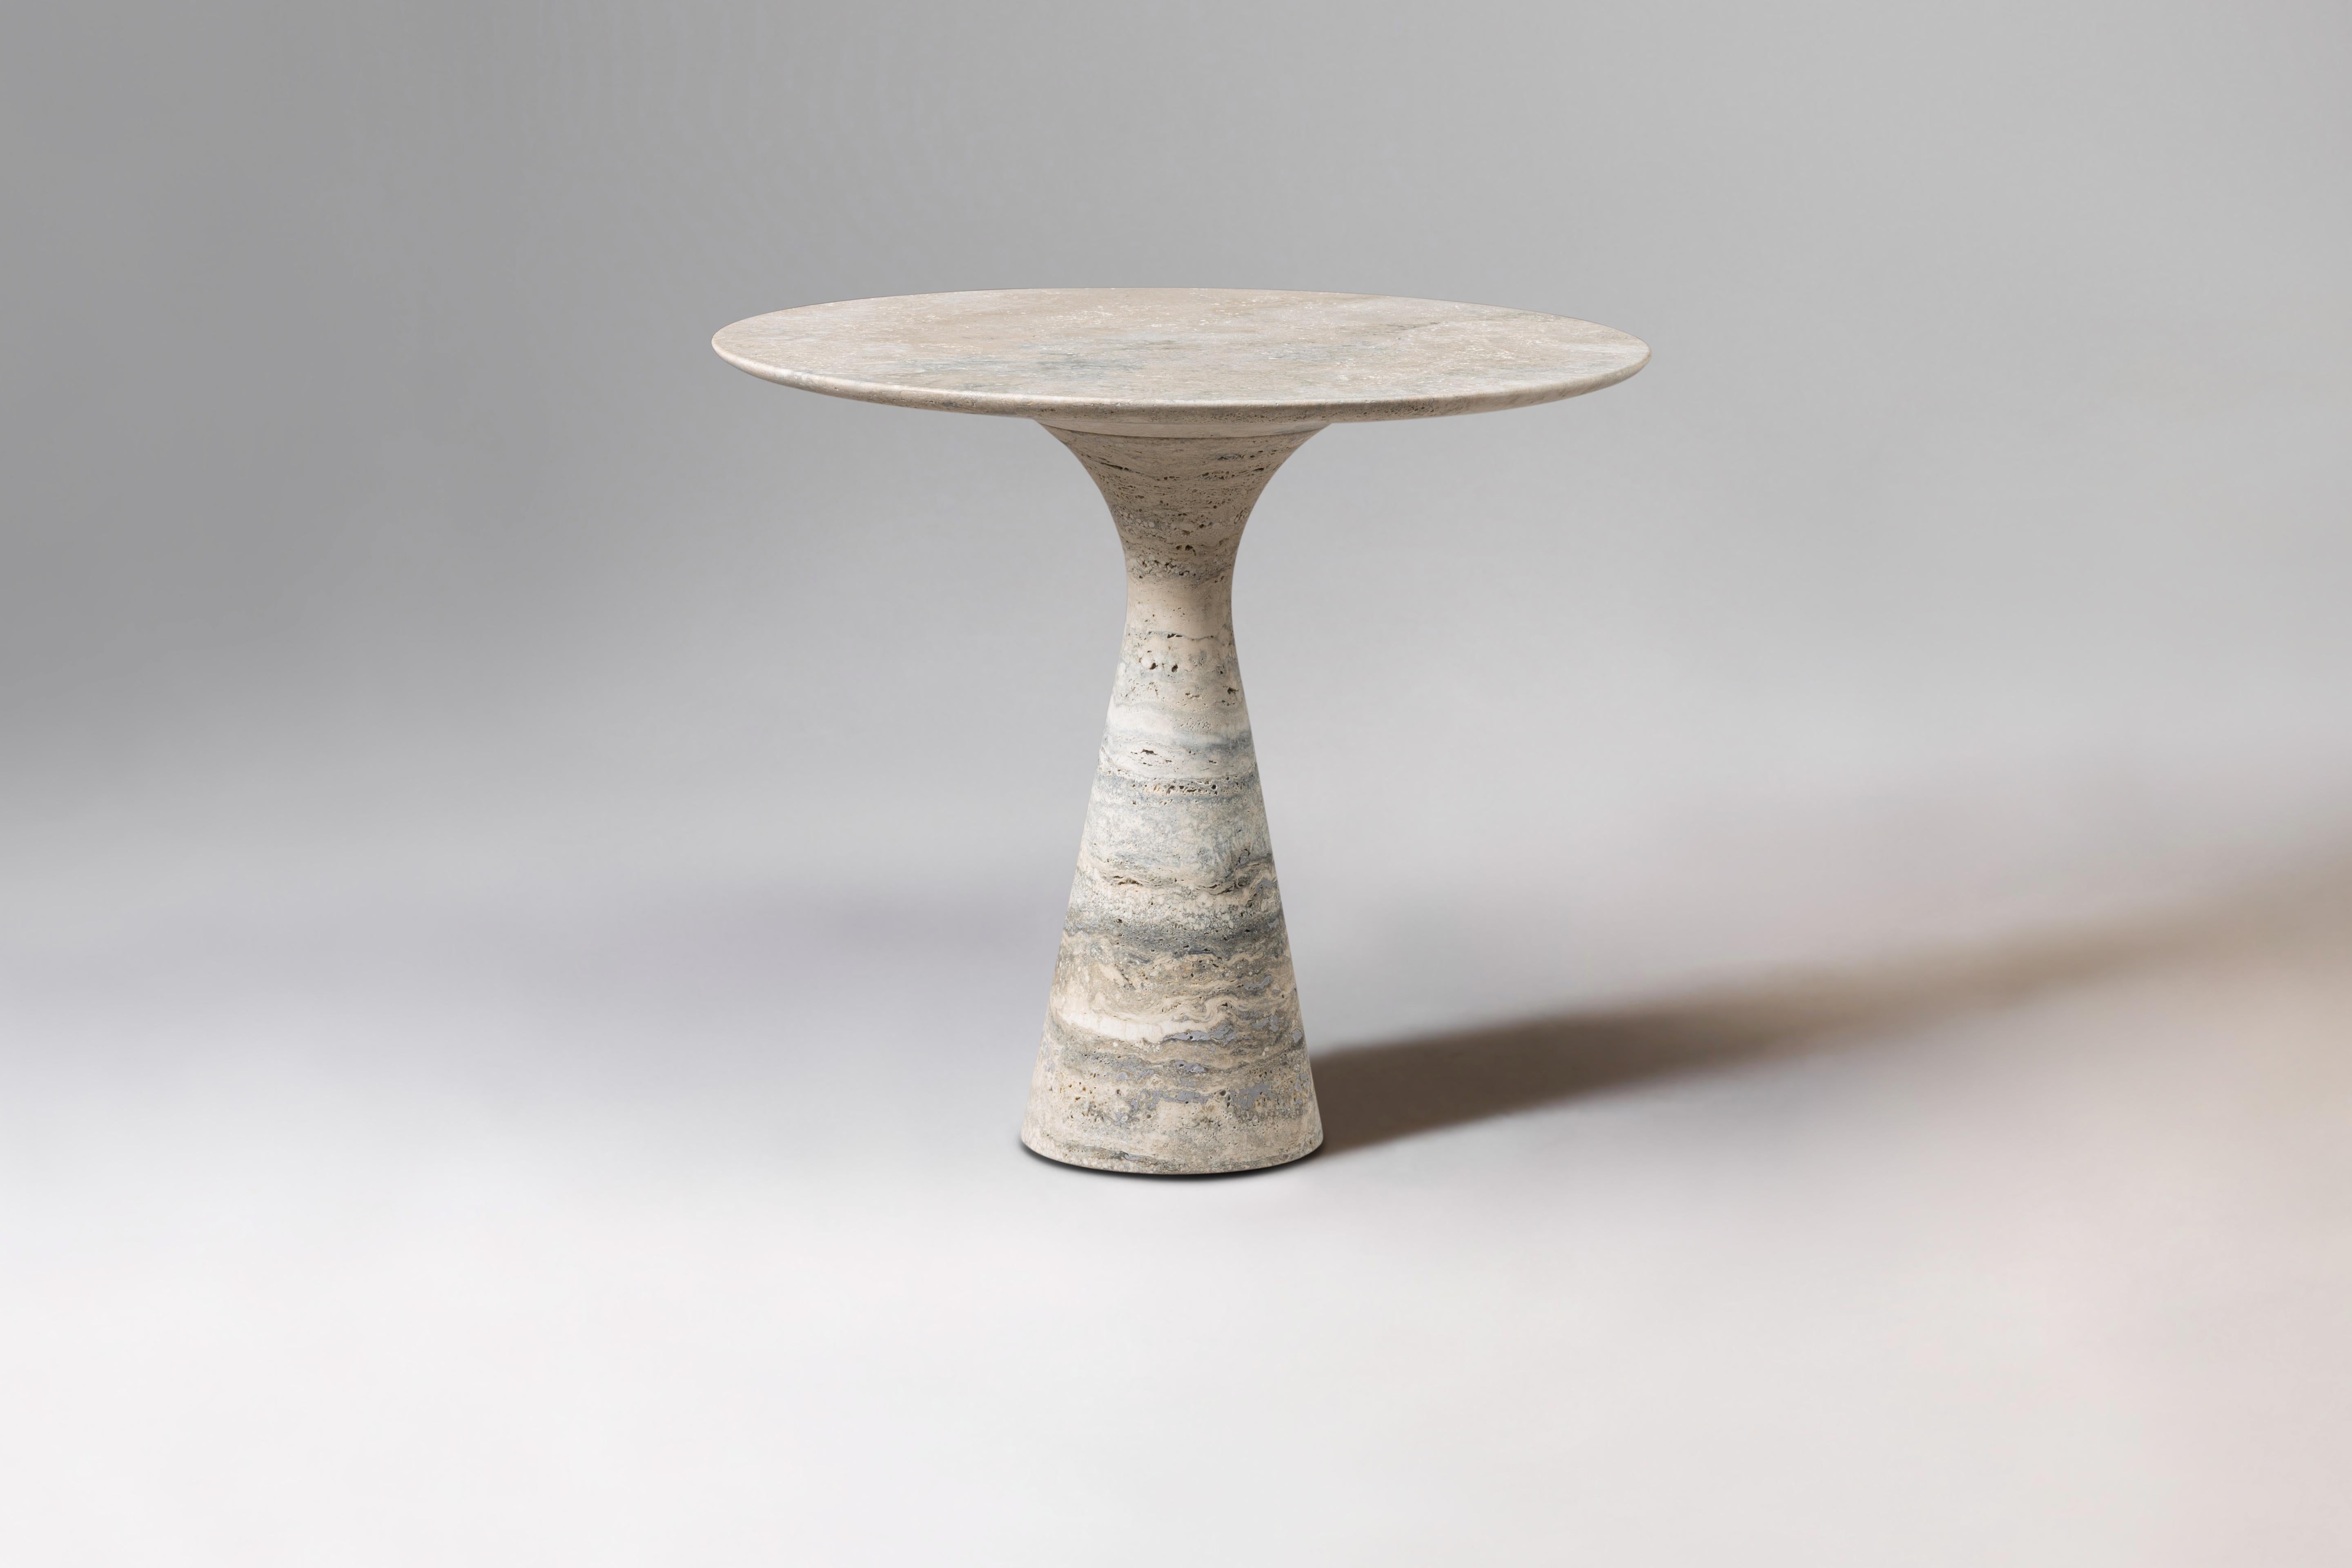 Table d'appoint en marbre Travertino Silver Refined Contemporary 62/45
Dimensions : Diamètre 45 x hauteur 62 cm
Matériaux : Argent Travertino

Angelo est l'essence même d'une table ronde en pierre naturelle, une forme sculpturale dans un matériau